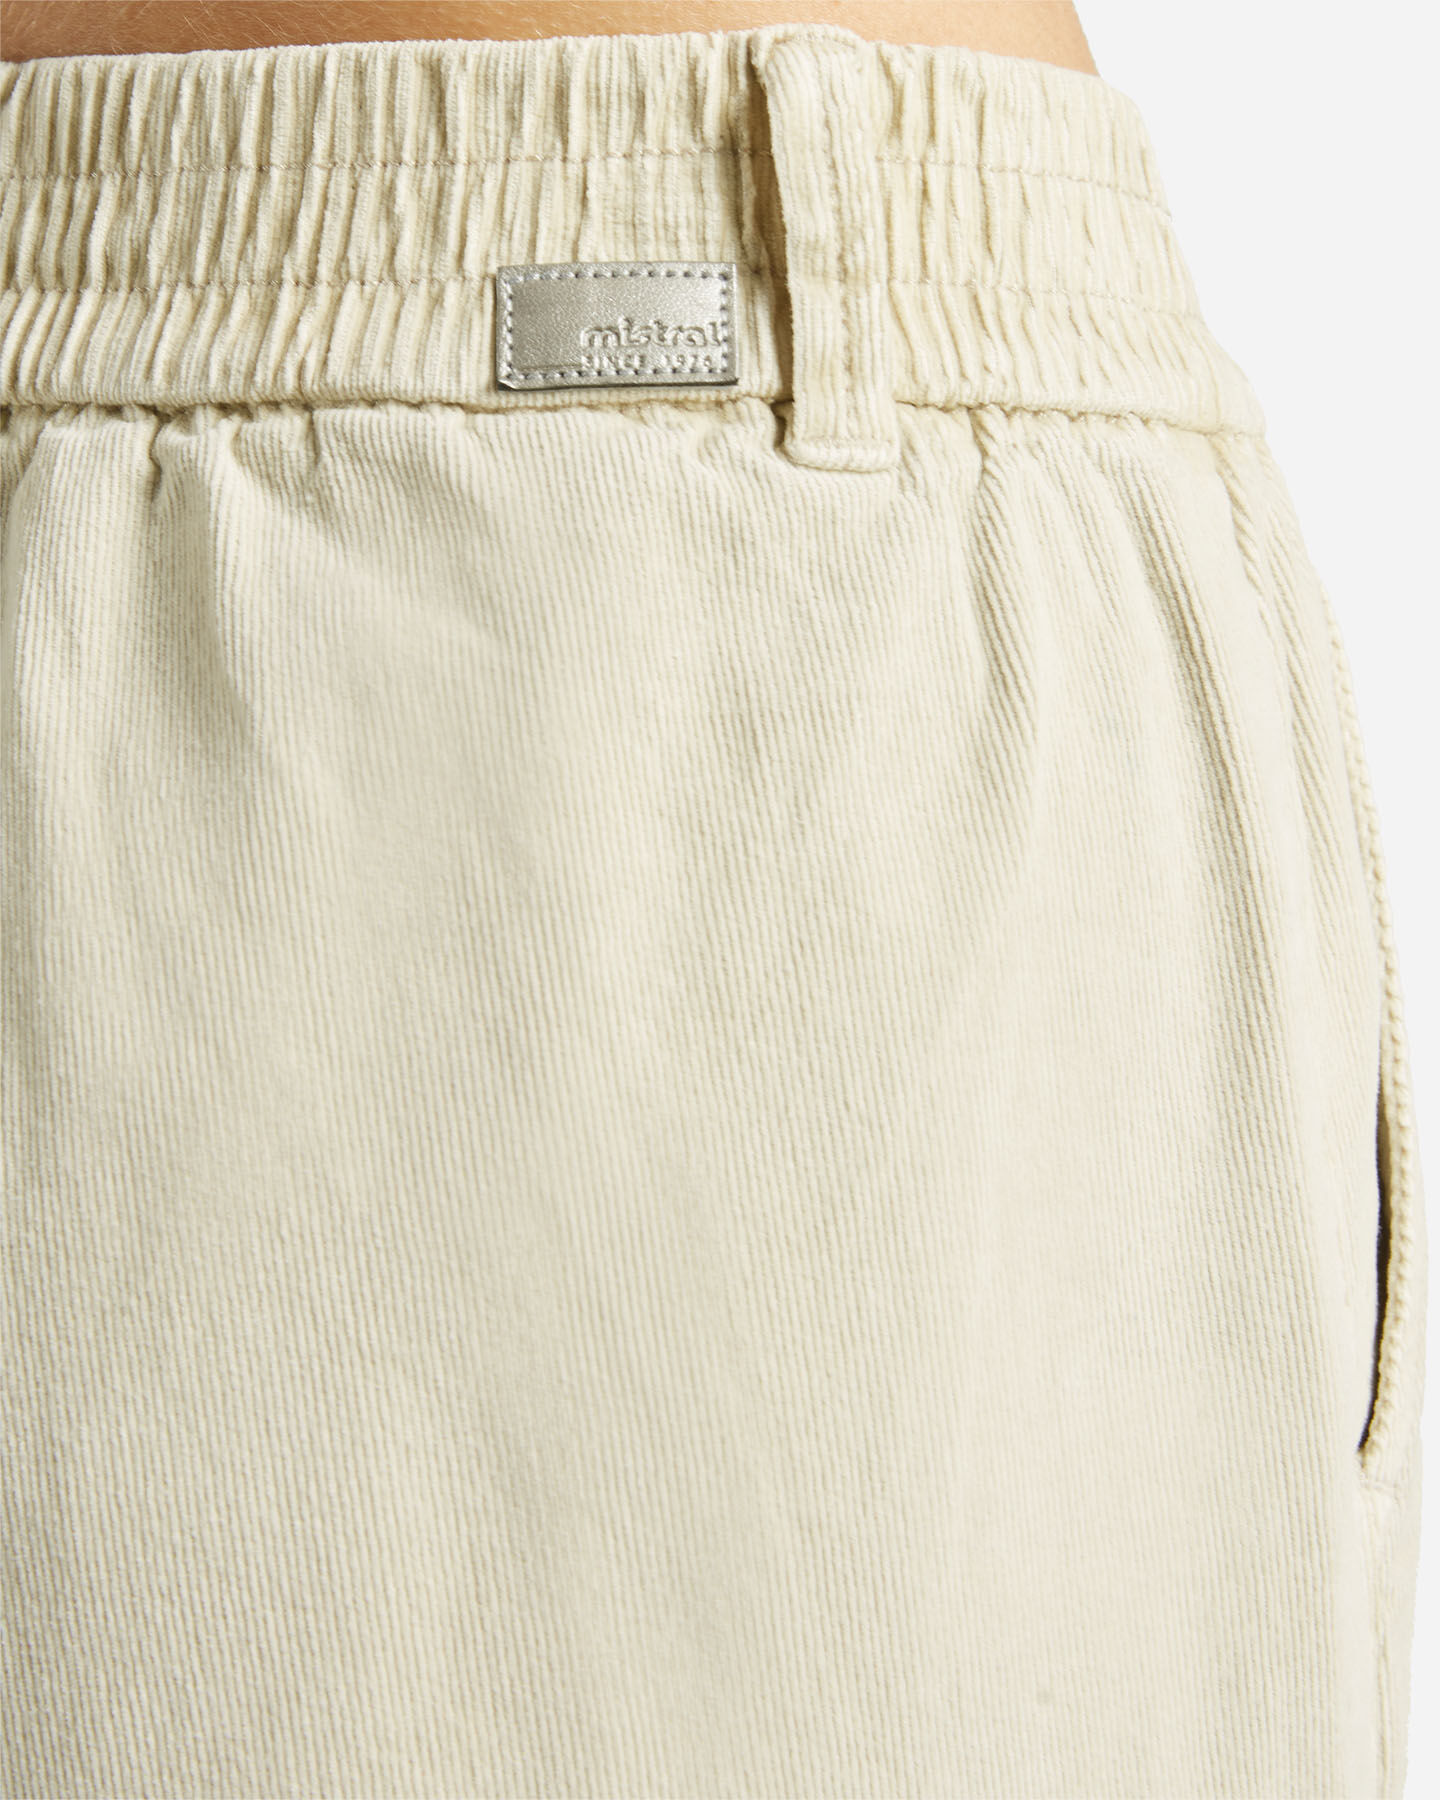  Pantalone MISTRAL URBAN CASUAL W S4125211|006|XS scatto 3